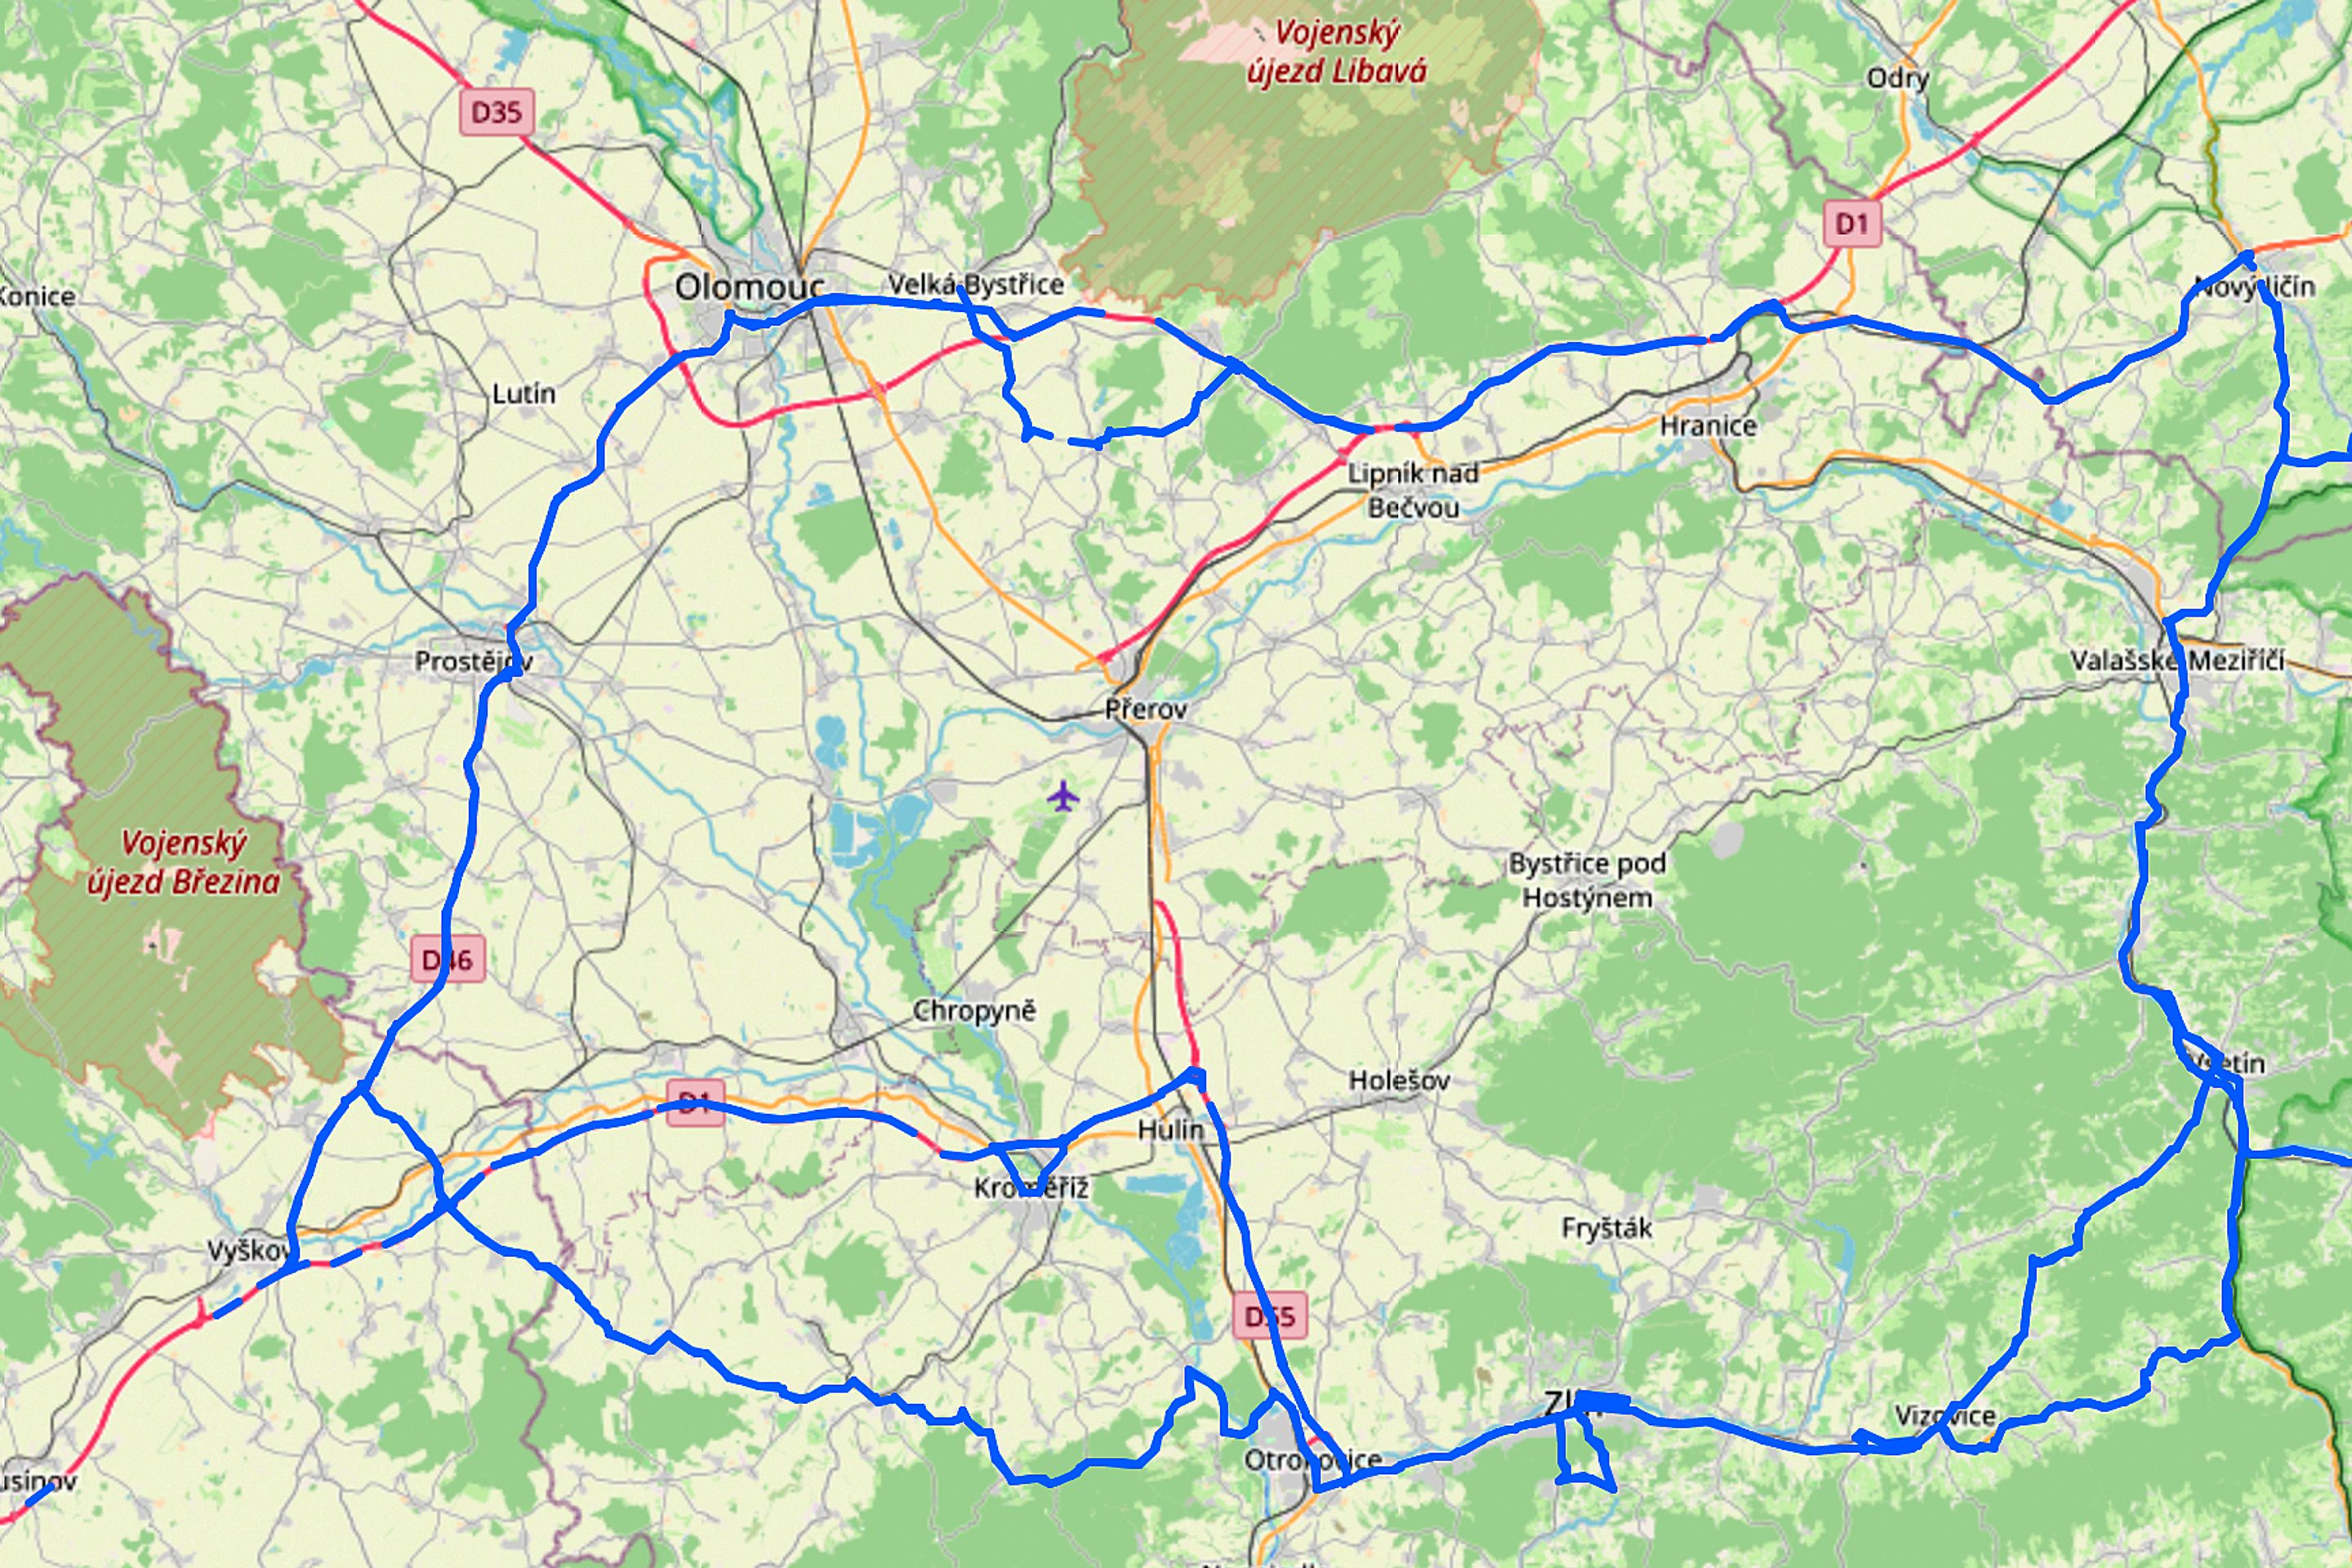 Trasy mezi Brnem, Zlínem a Olomoucí - Fotogalerie: Trasy pro testování autonomních aut (6/11)